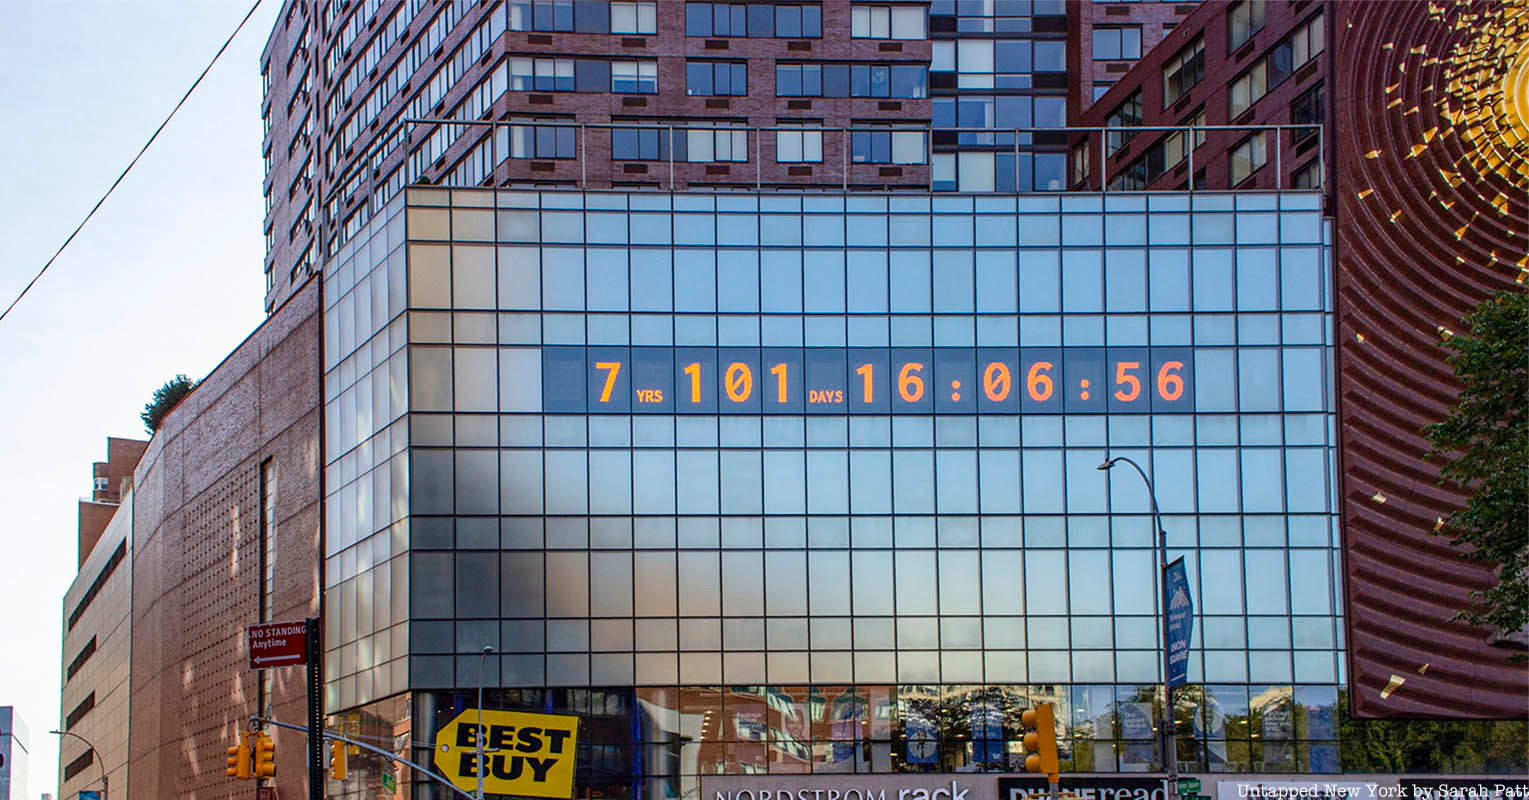 Climate Clock in Union Square